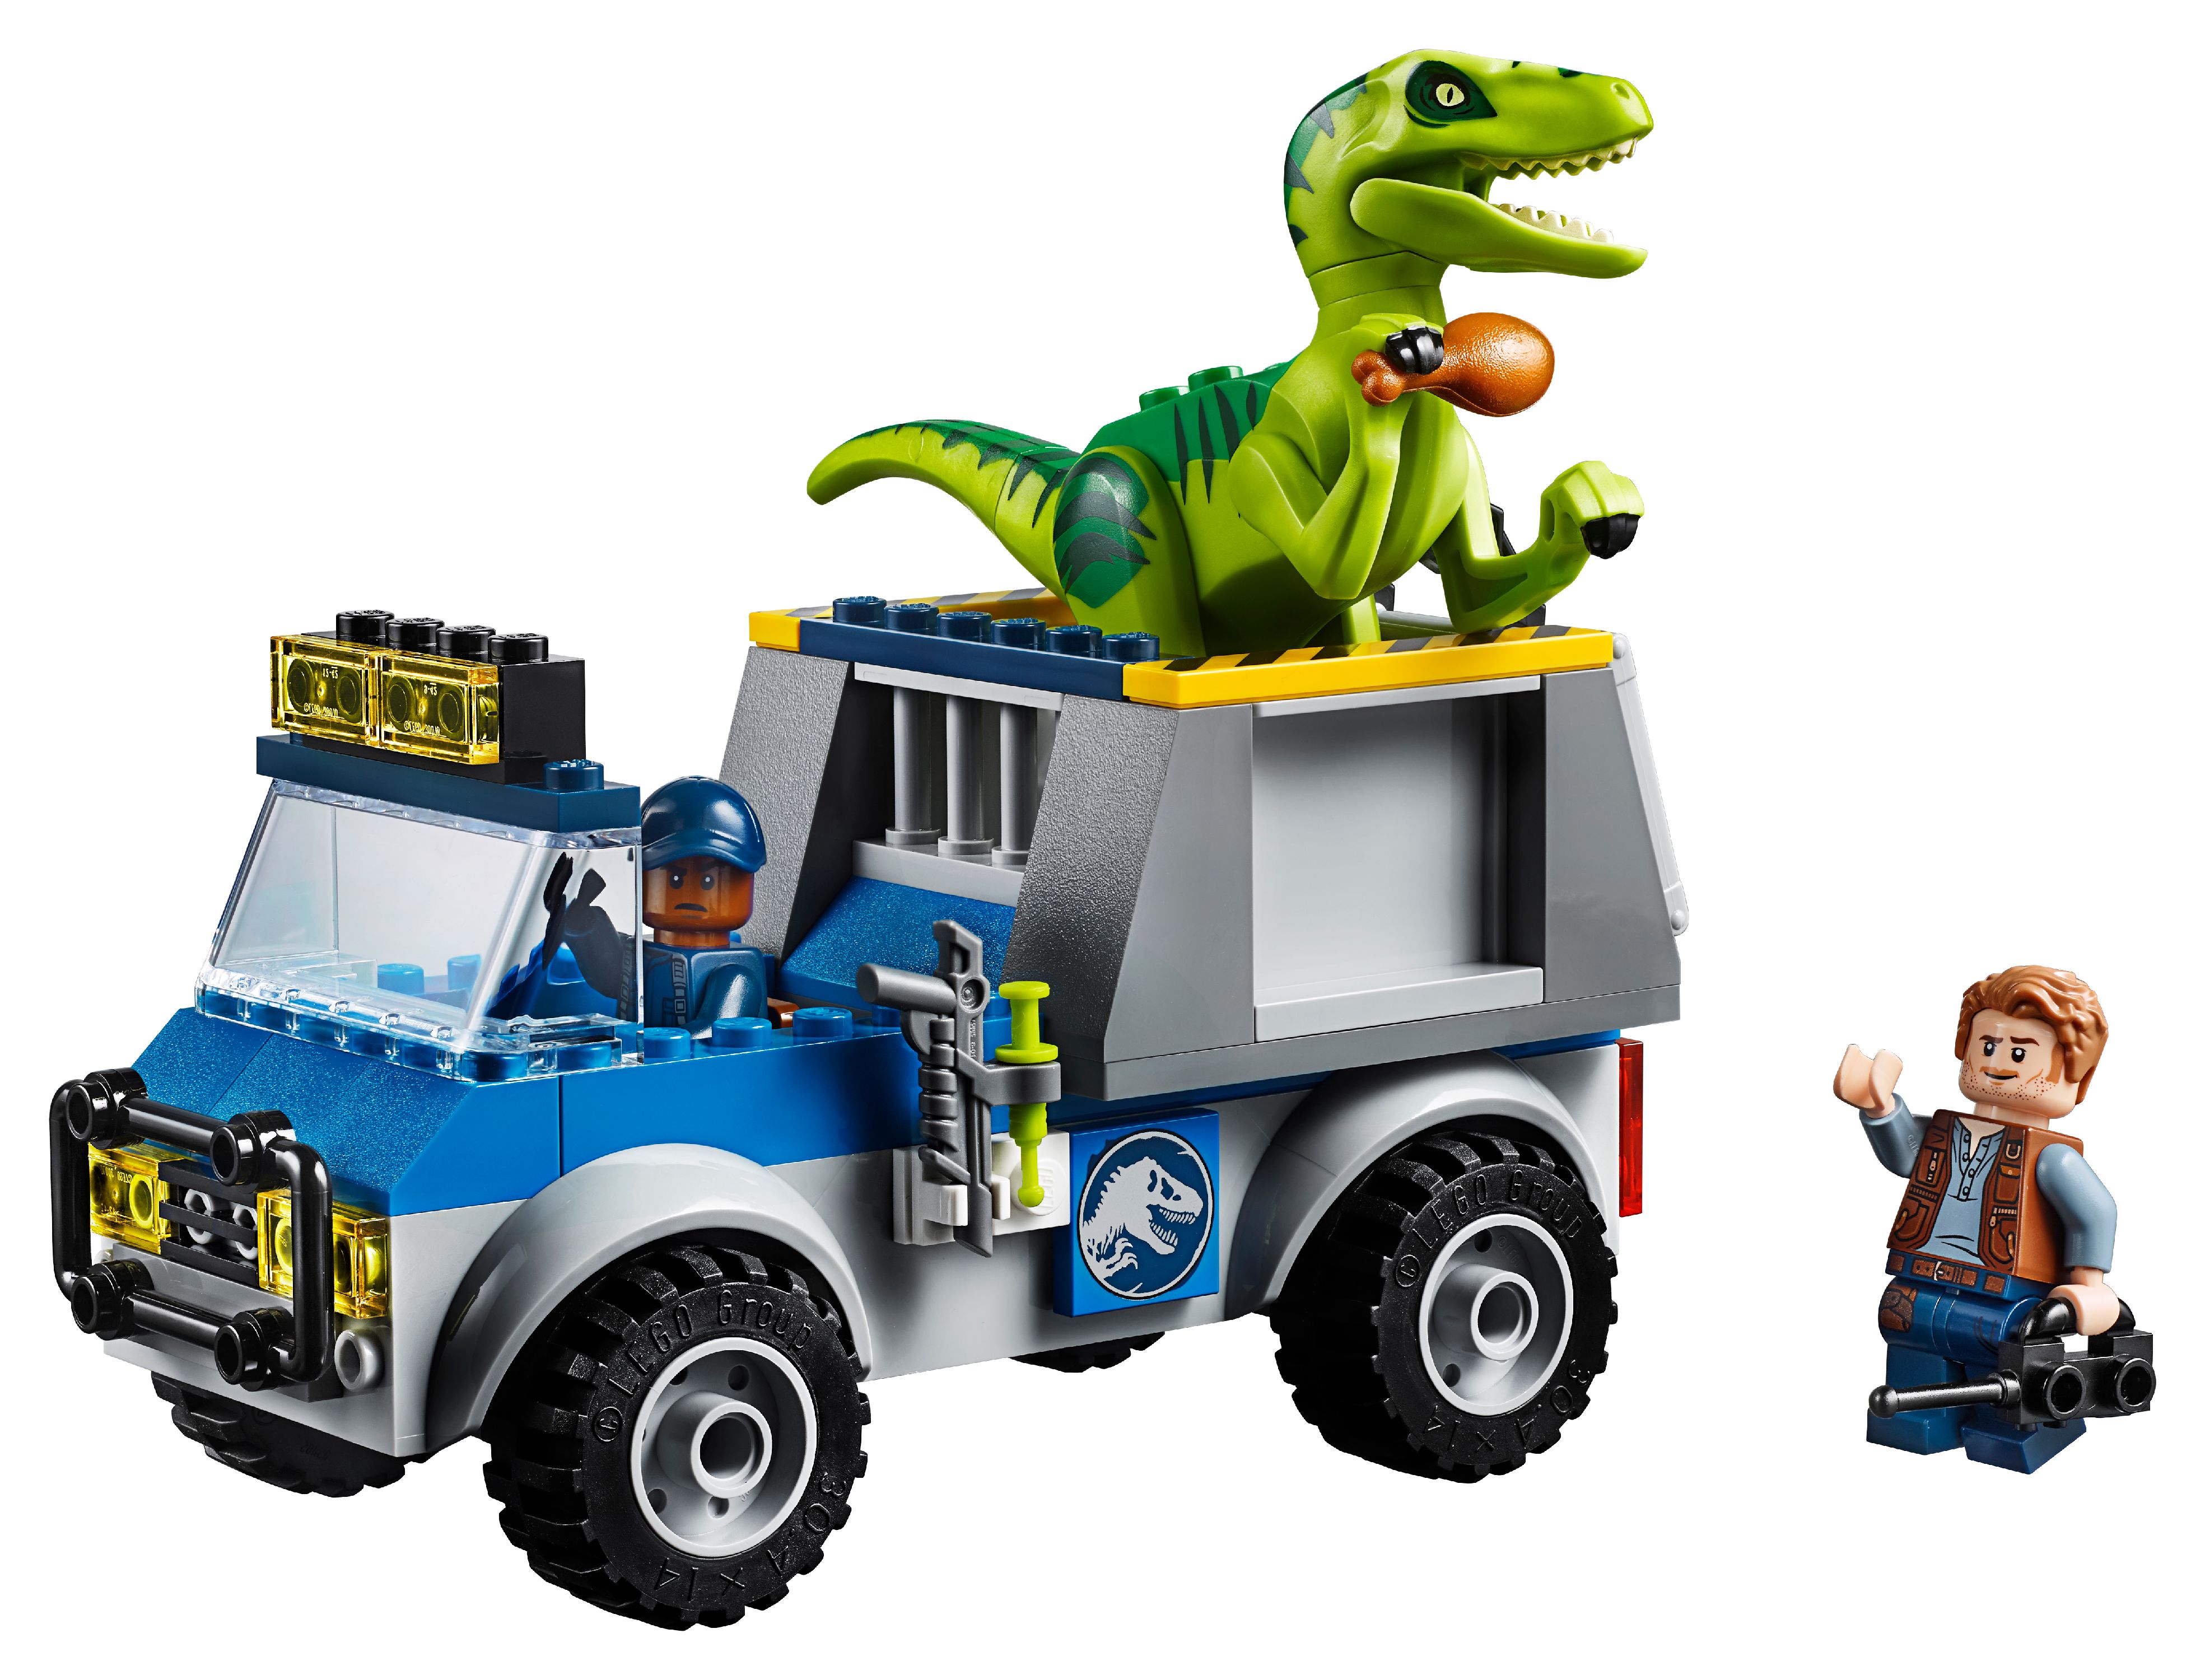 LEGO Juniors Raptor Rescue Truck 10757 (85 Pieces) - image 2 of 5